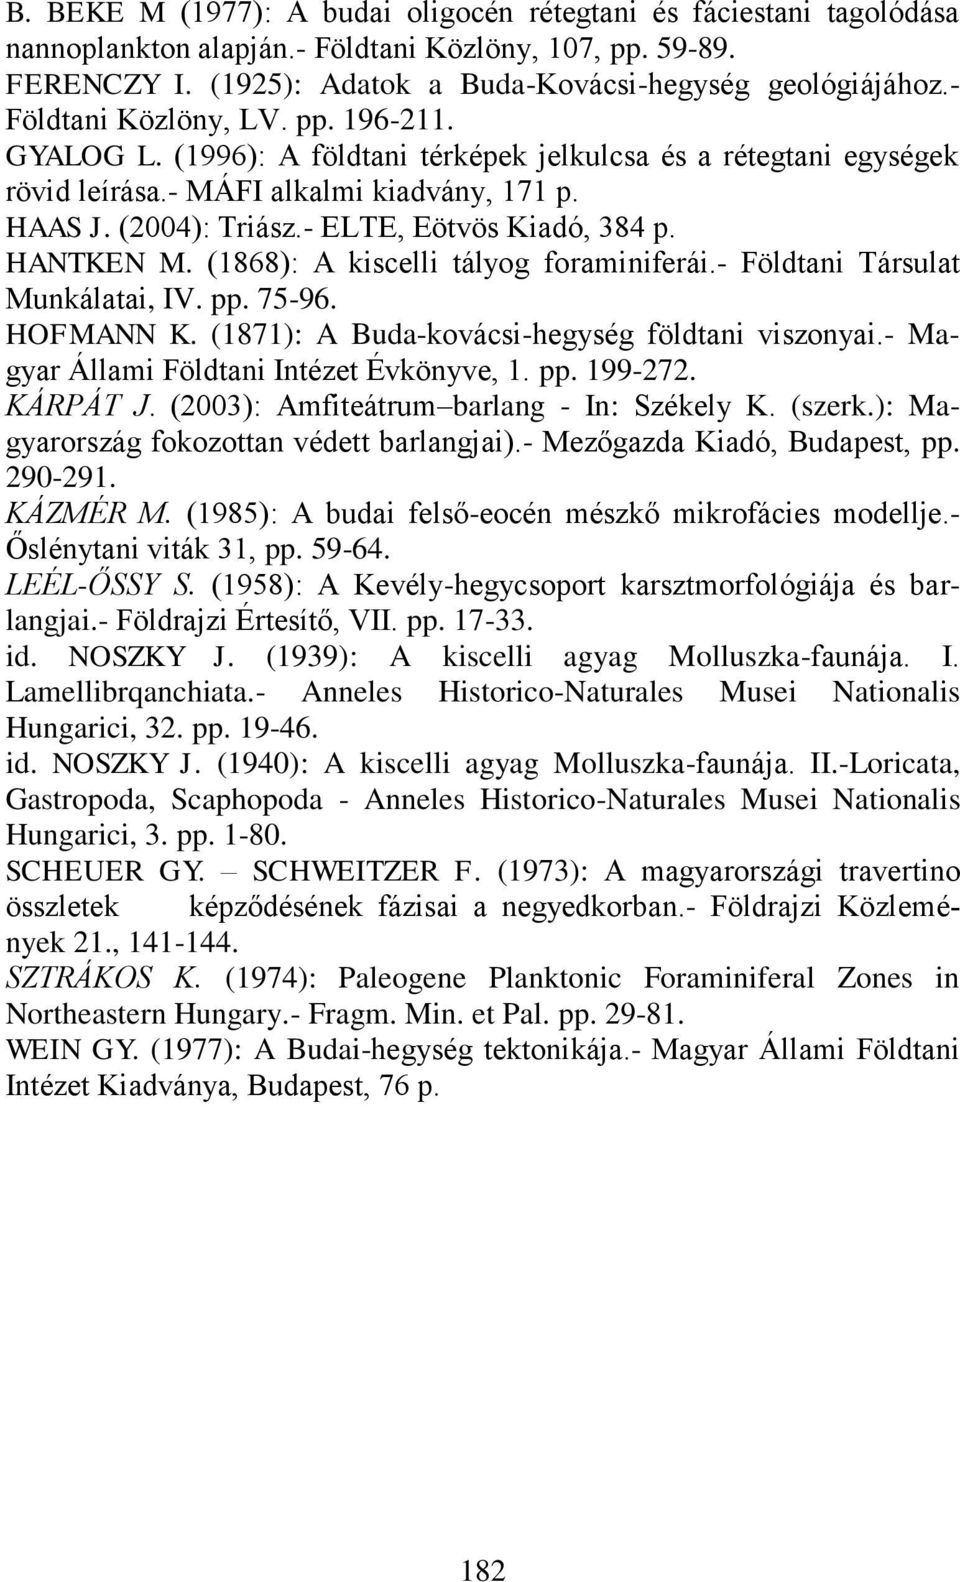 - ELTE, Eötvös Kiadó, 384 p. HANTKEN M. (1868): A kiscelli tályog foraminiferái.- Földtani Társulat Munkálatai, IV. pp. 75-96. HOFMANN K. (1871): A Buda-kovácsi-hegység földtani viszonyai.